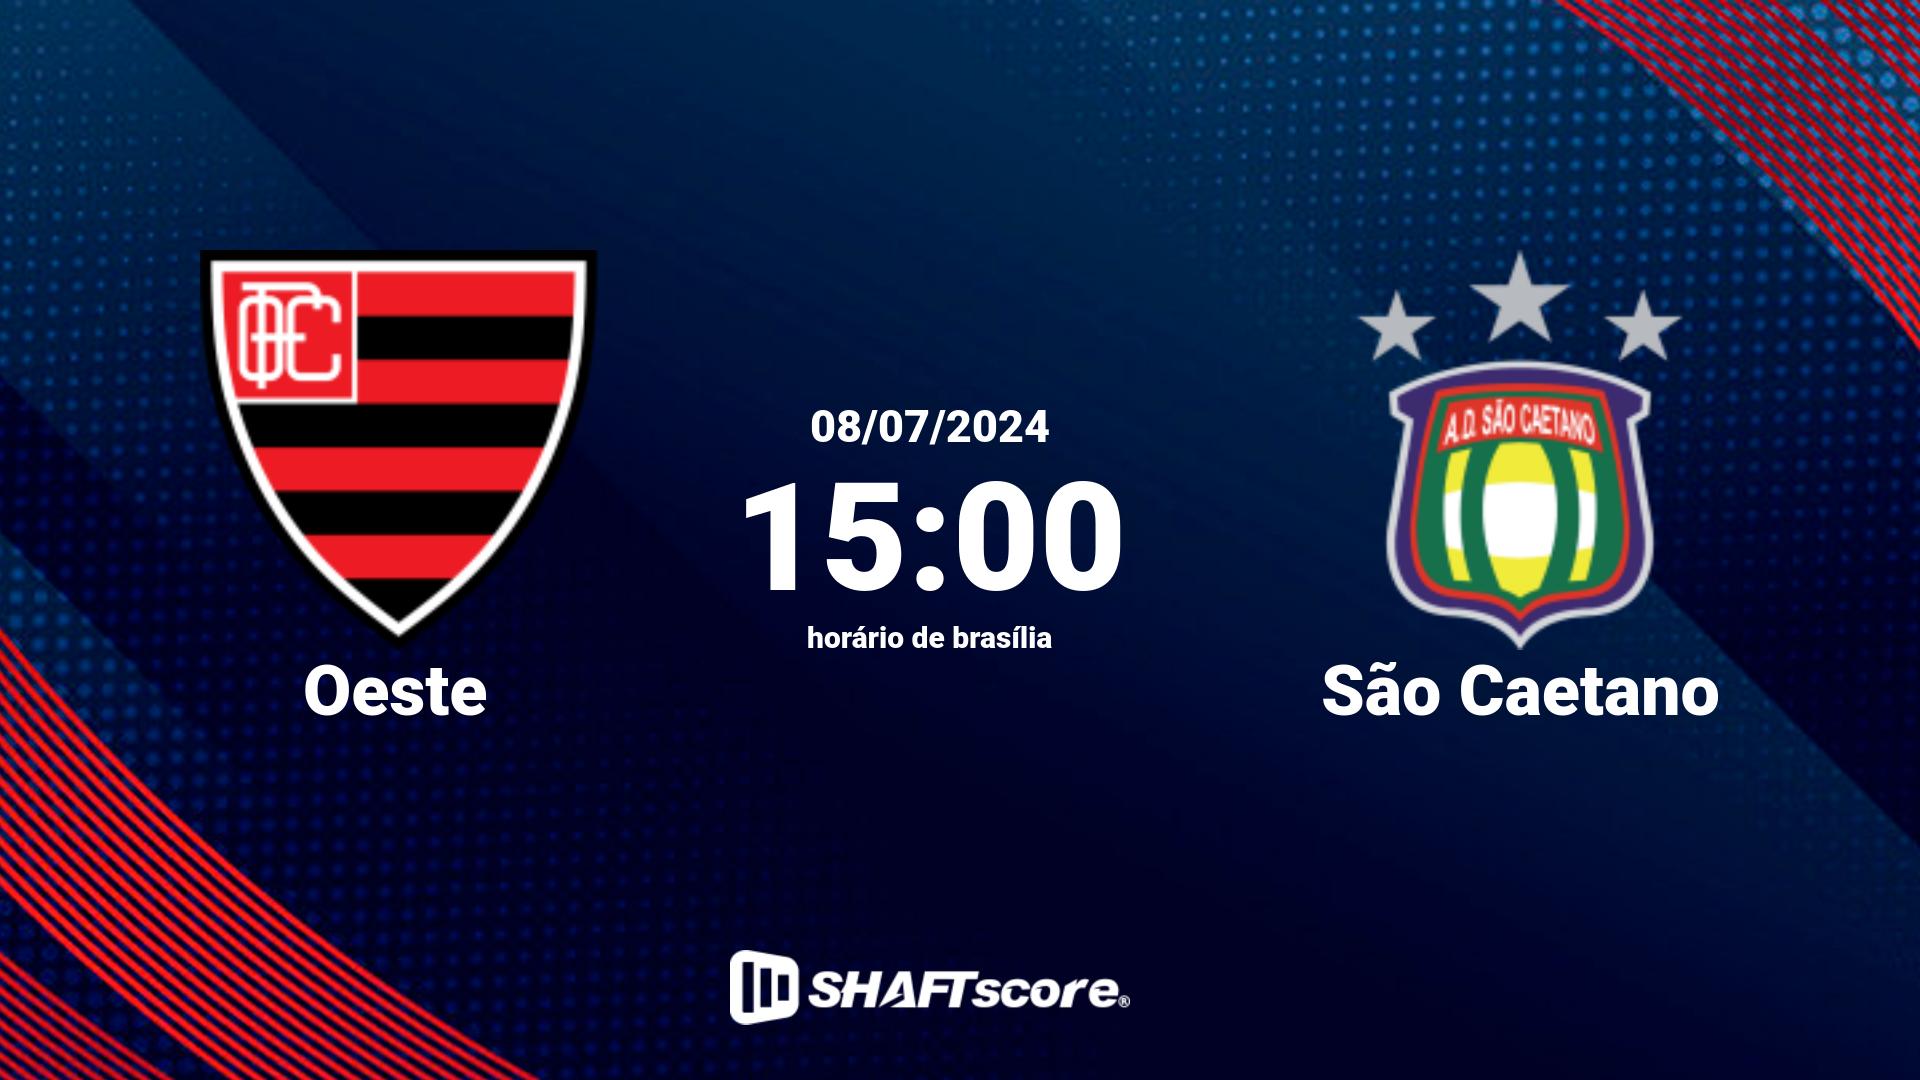 Estatísticas do jogo Oeste vs São Caetano 08.07 15:00